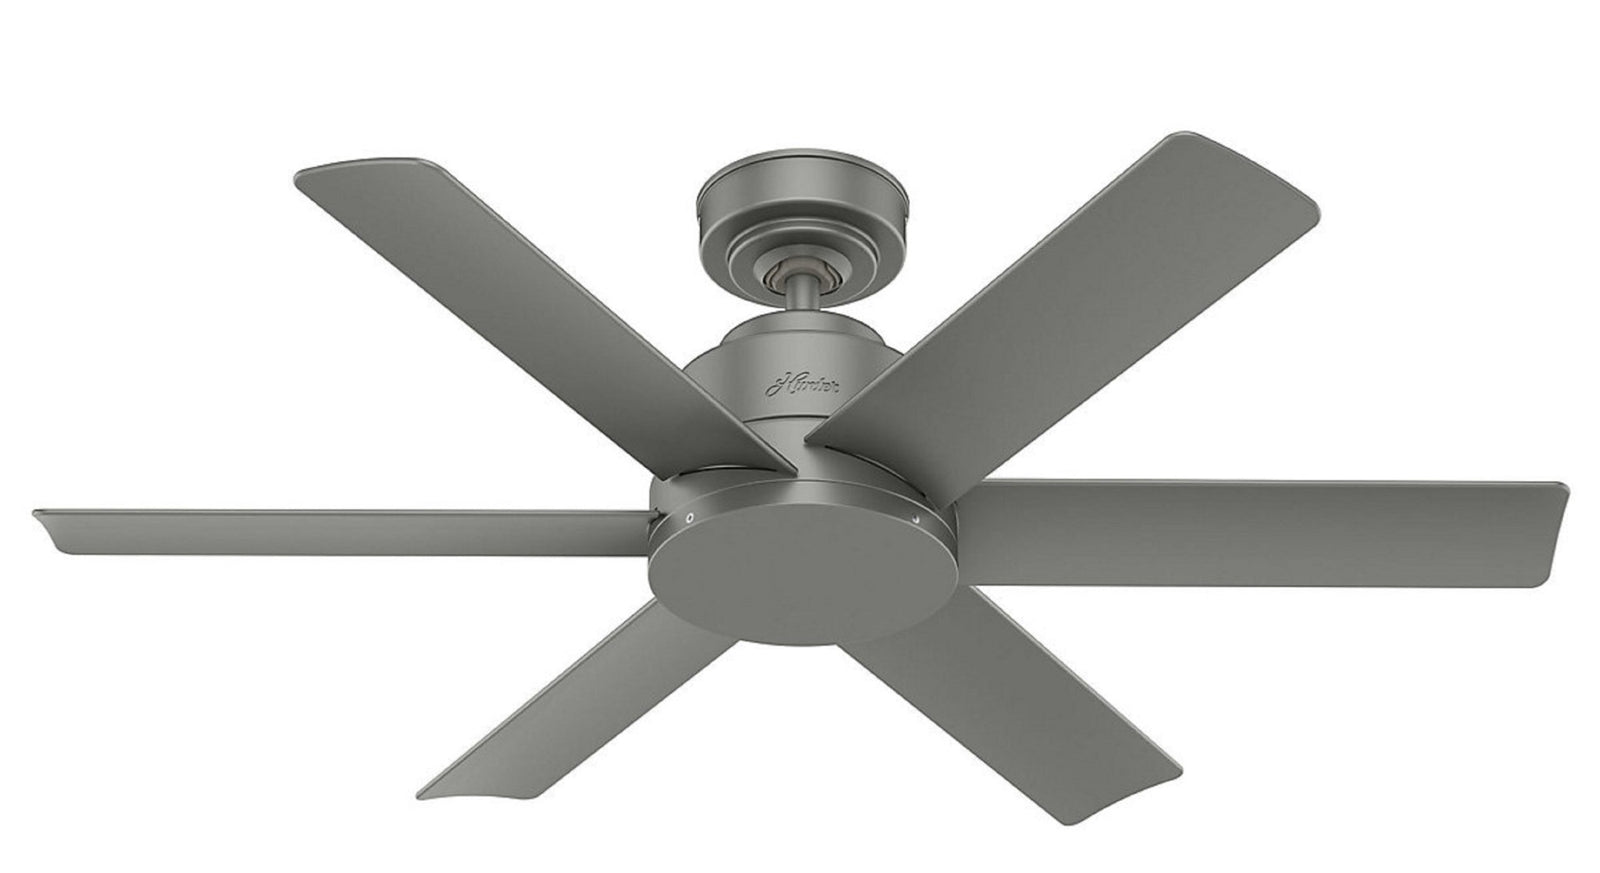 La migliore marca di ventilatori da soffitto? 